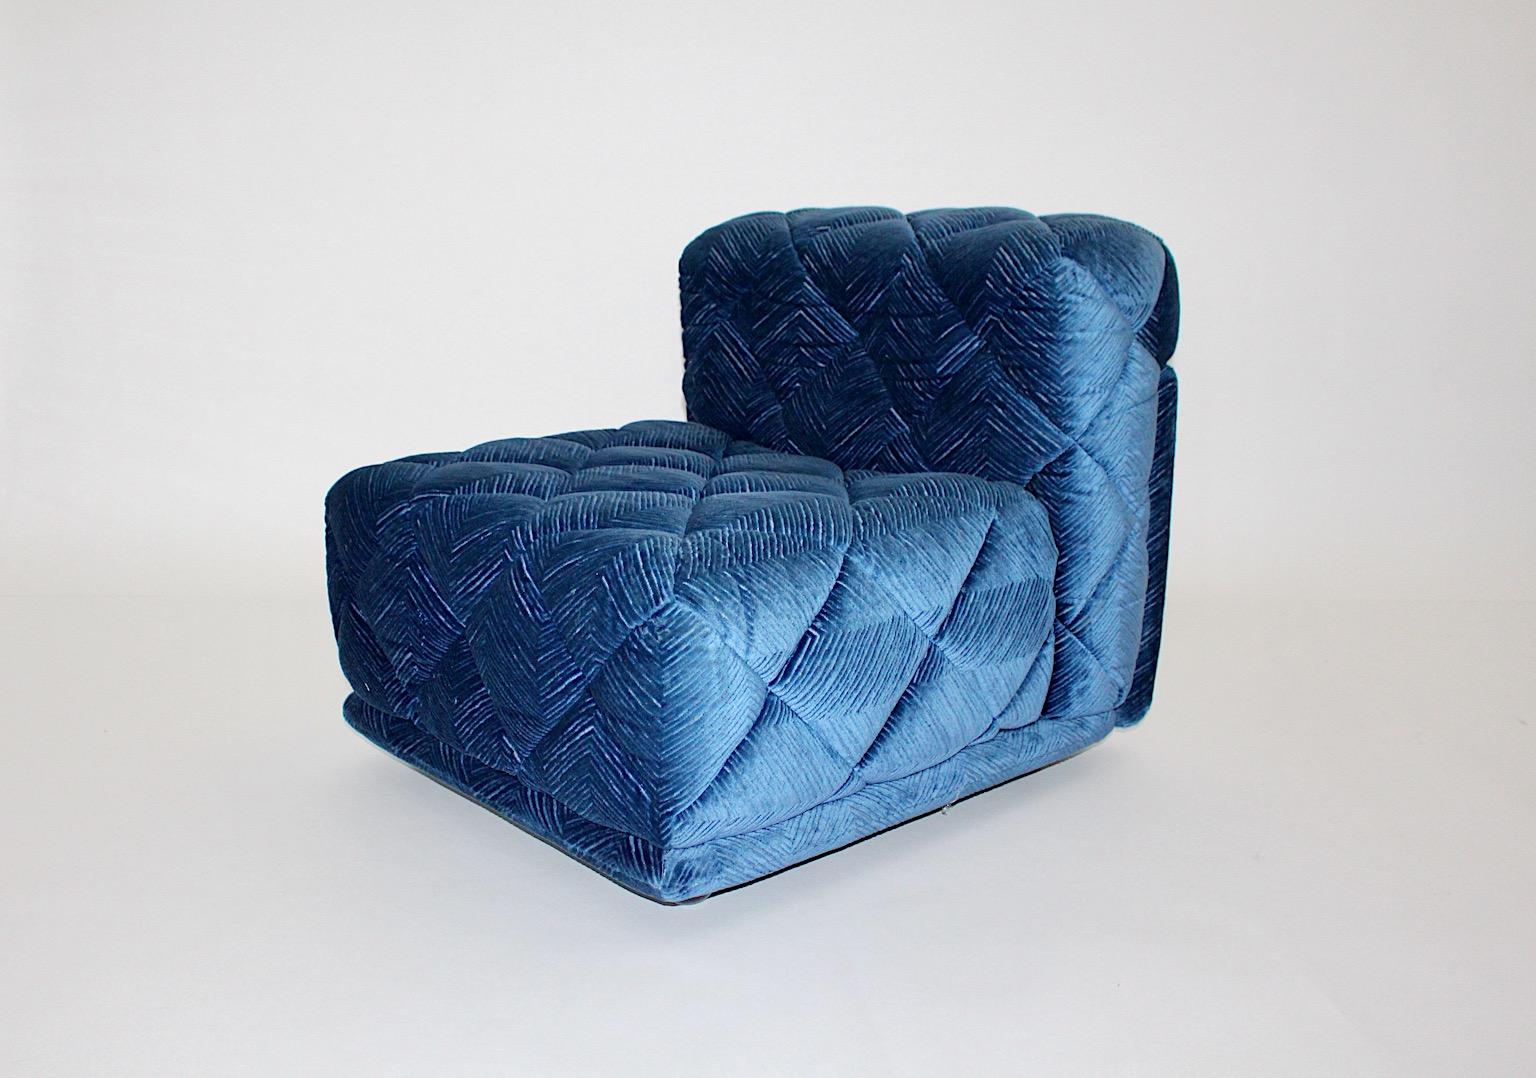 Élément modulaire vintage Space Age ou canapé ou chaise longue modèle Rhombos en tissu velours cousu de couleur bleue par Wittmann 1970 Autriche.
Un magnifique élément de canapé modulaire ou chaise longue recouvert d'un tissu de velours surpiqué